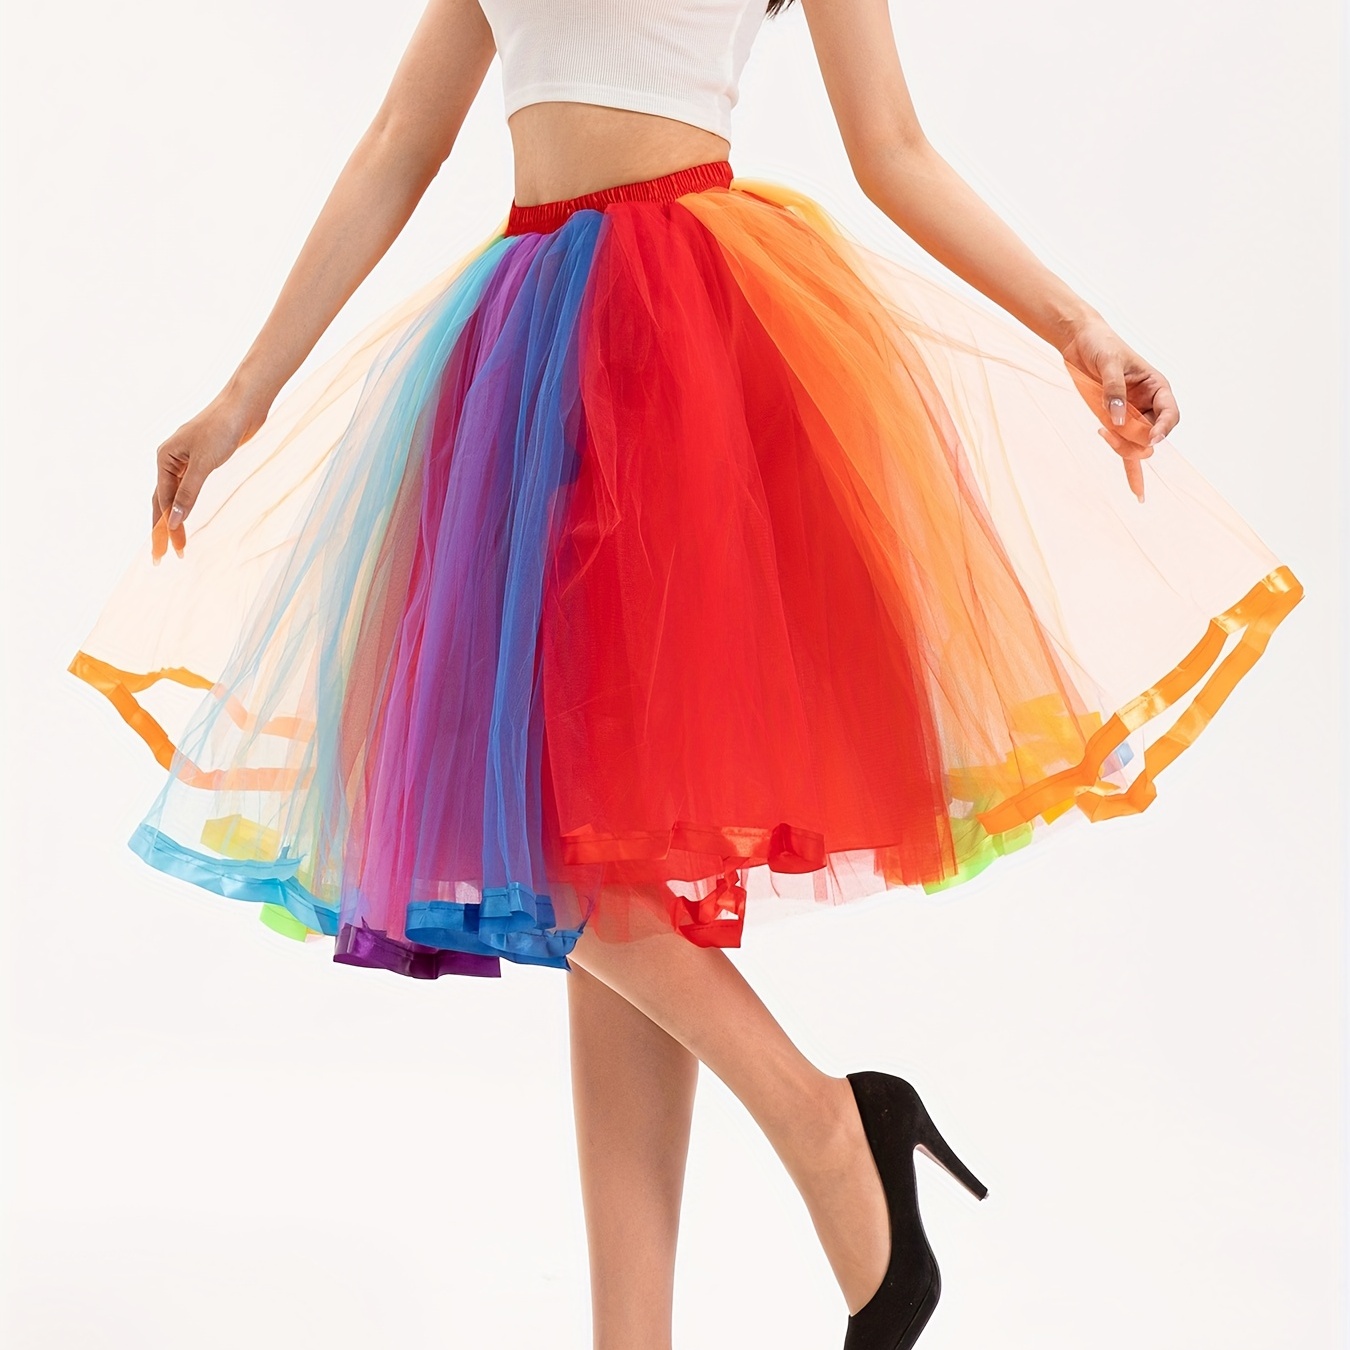 Regalo carino per bambina, festa, tutù arcobaleno, gonna da principessa,  vestito da ballo in tulle – i migliori prodotti nel negozio online Joom Geek